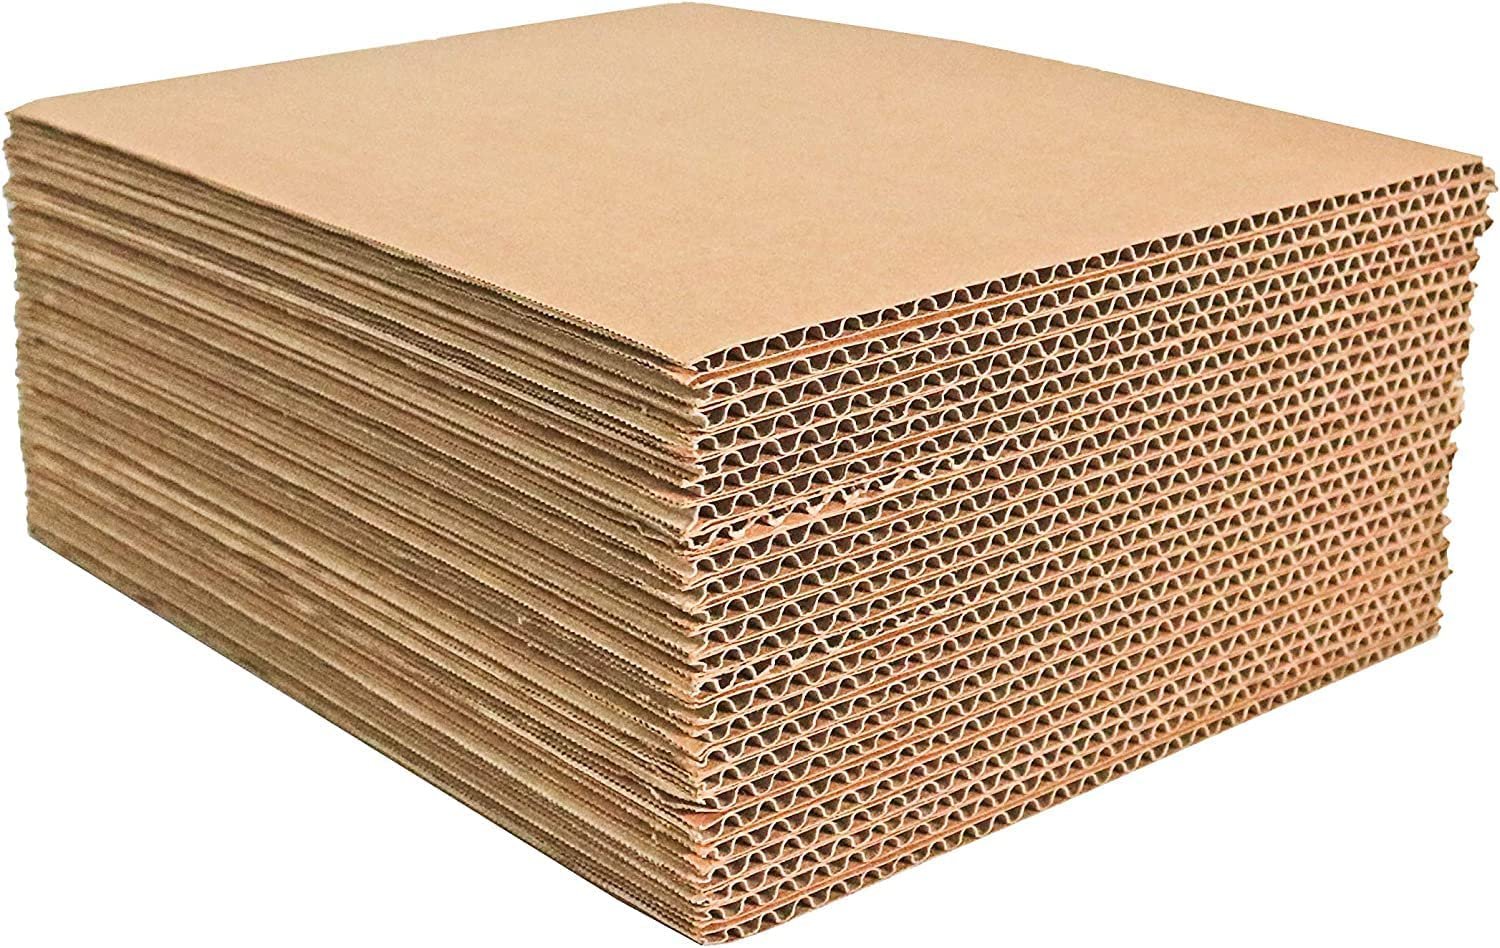 Corrugated paper, Corrugated cardboard, Paper beads